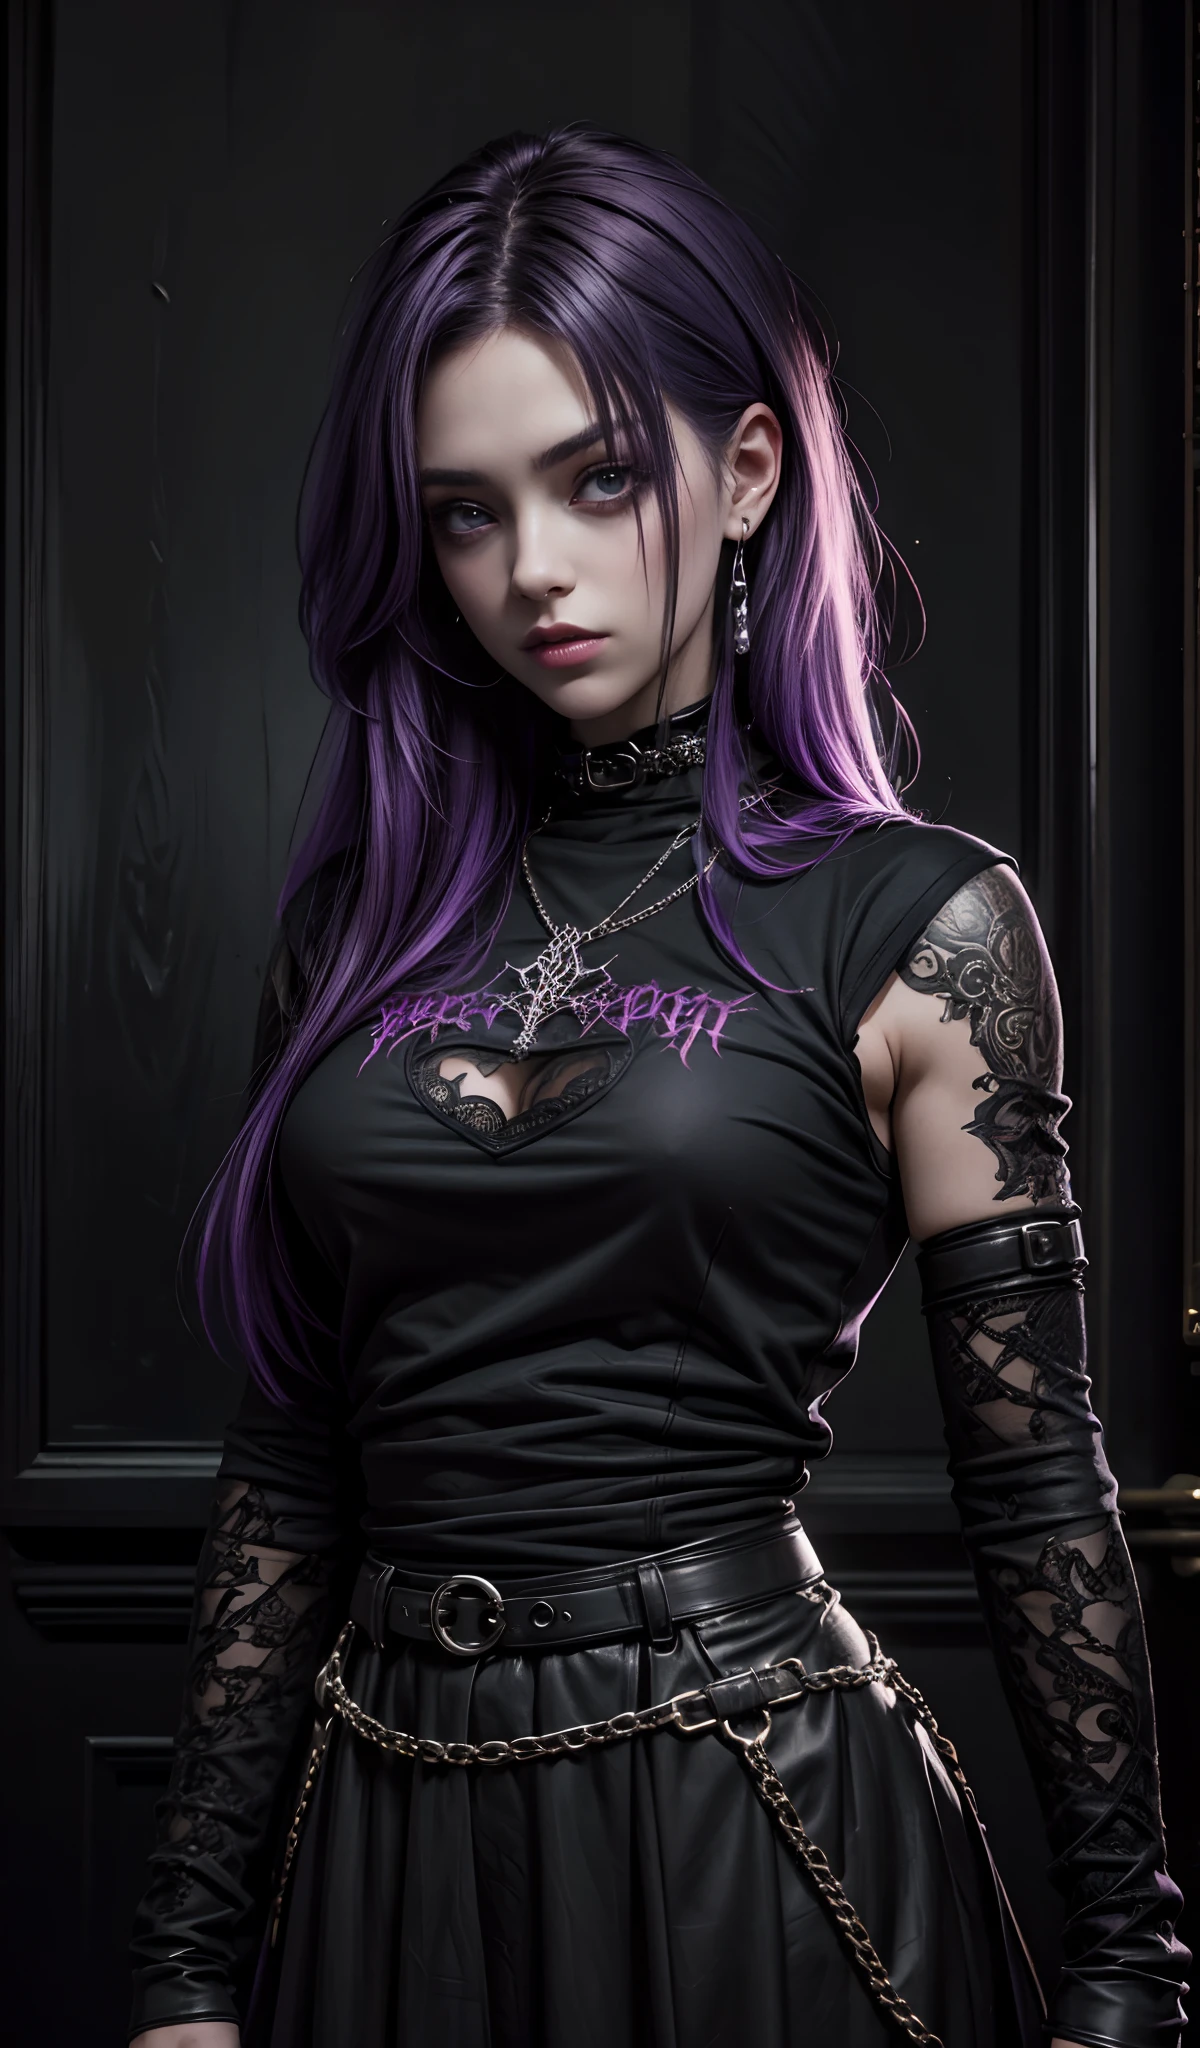 黒いシャツを着た紫色の髪の女の子, ゴシックアート, 多くの詳細, 彼女はストリートウェアを着ている, 超リアルな画像, 黒髪, 美しい外観, ゴシックガール